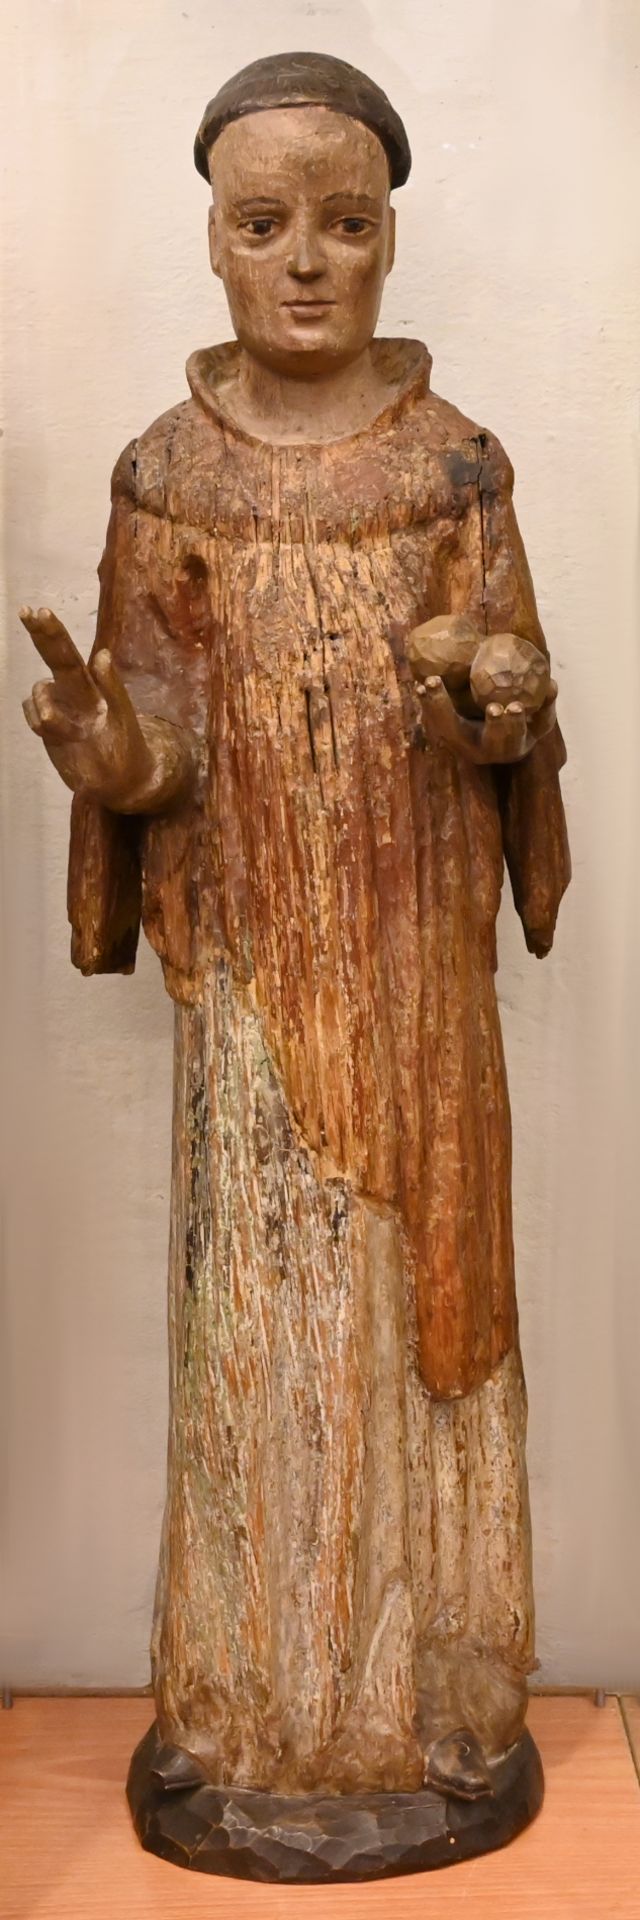 1 Holzfigur "Heiliger Stephanus" farbig gefasst, lt. beiliegender Beschreibung romanisch mit Ergänzu